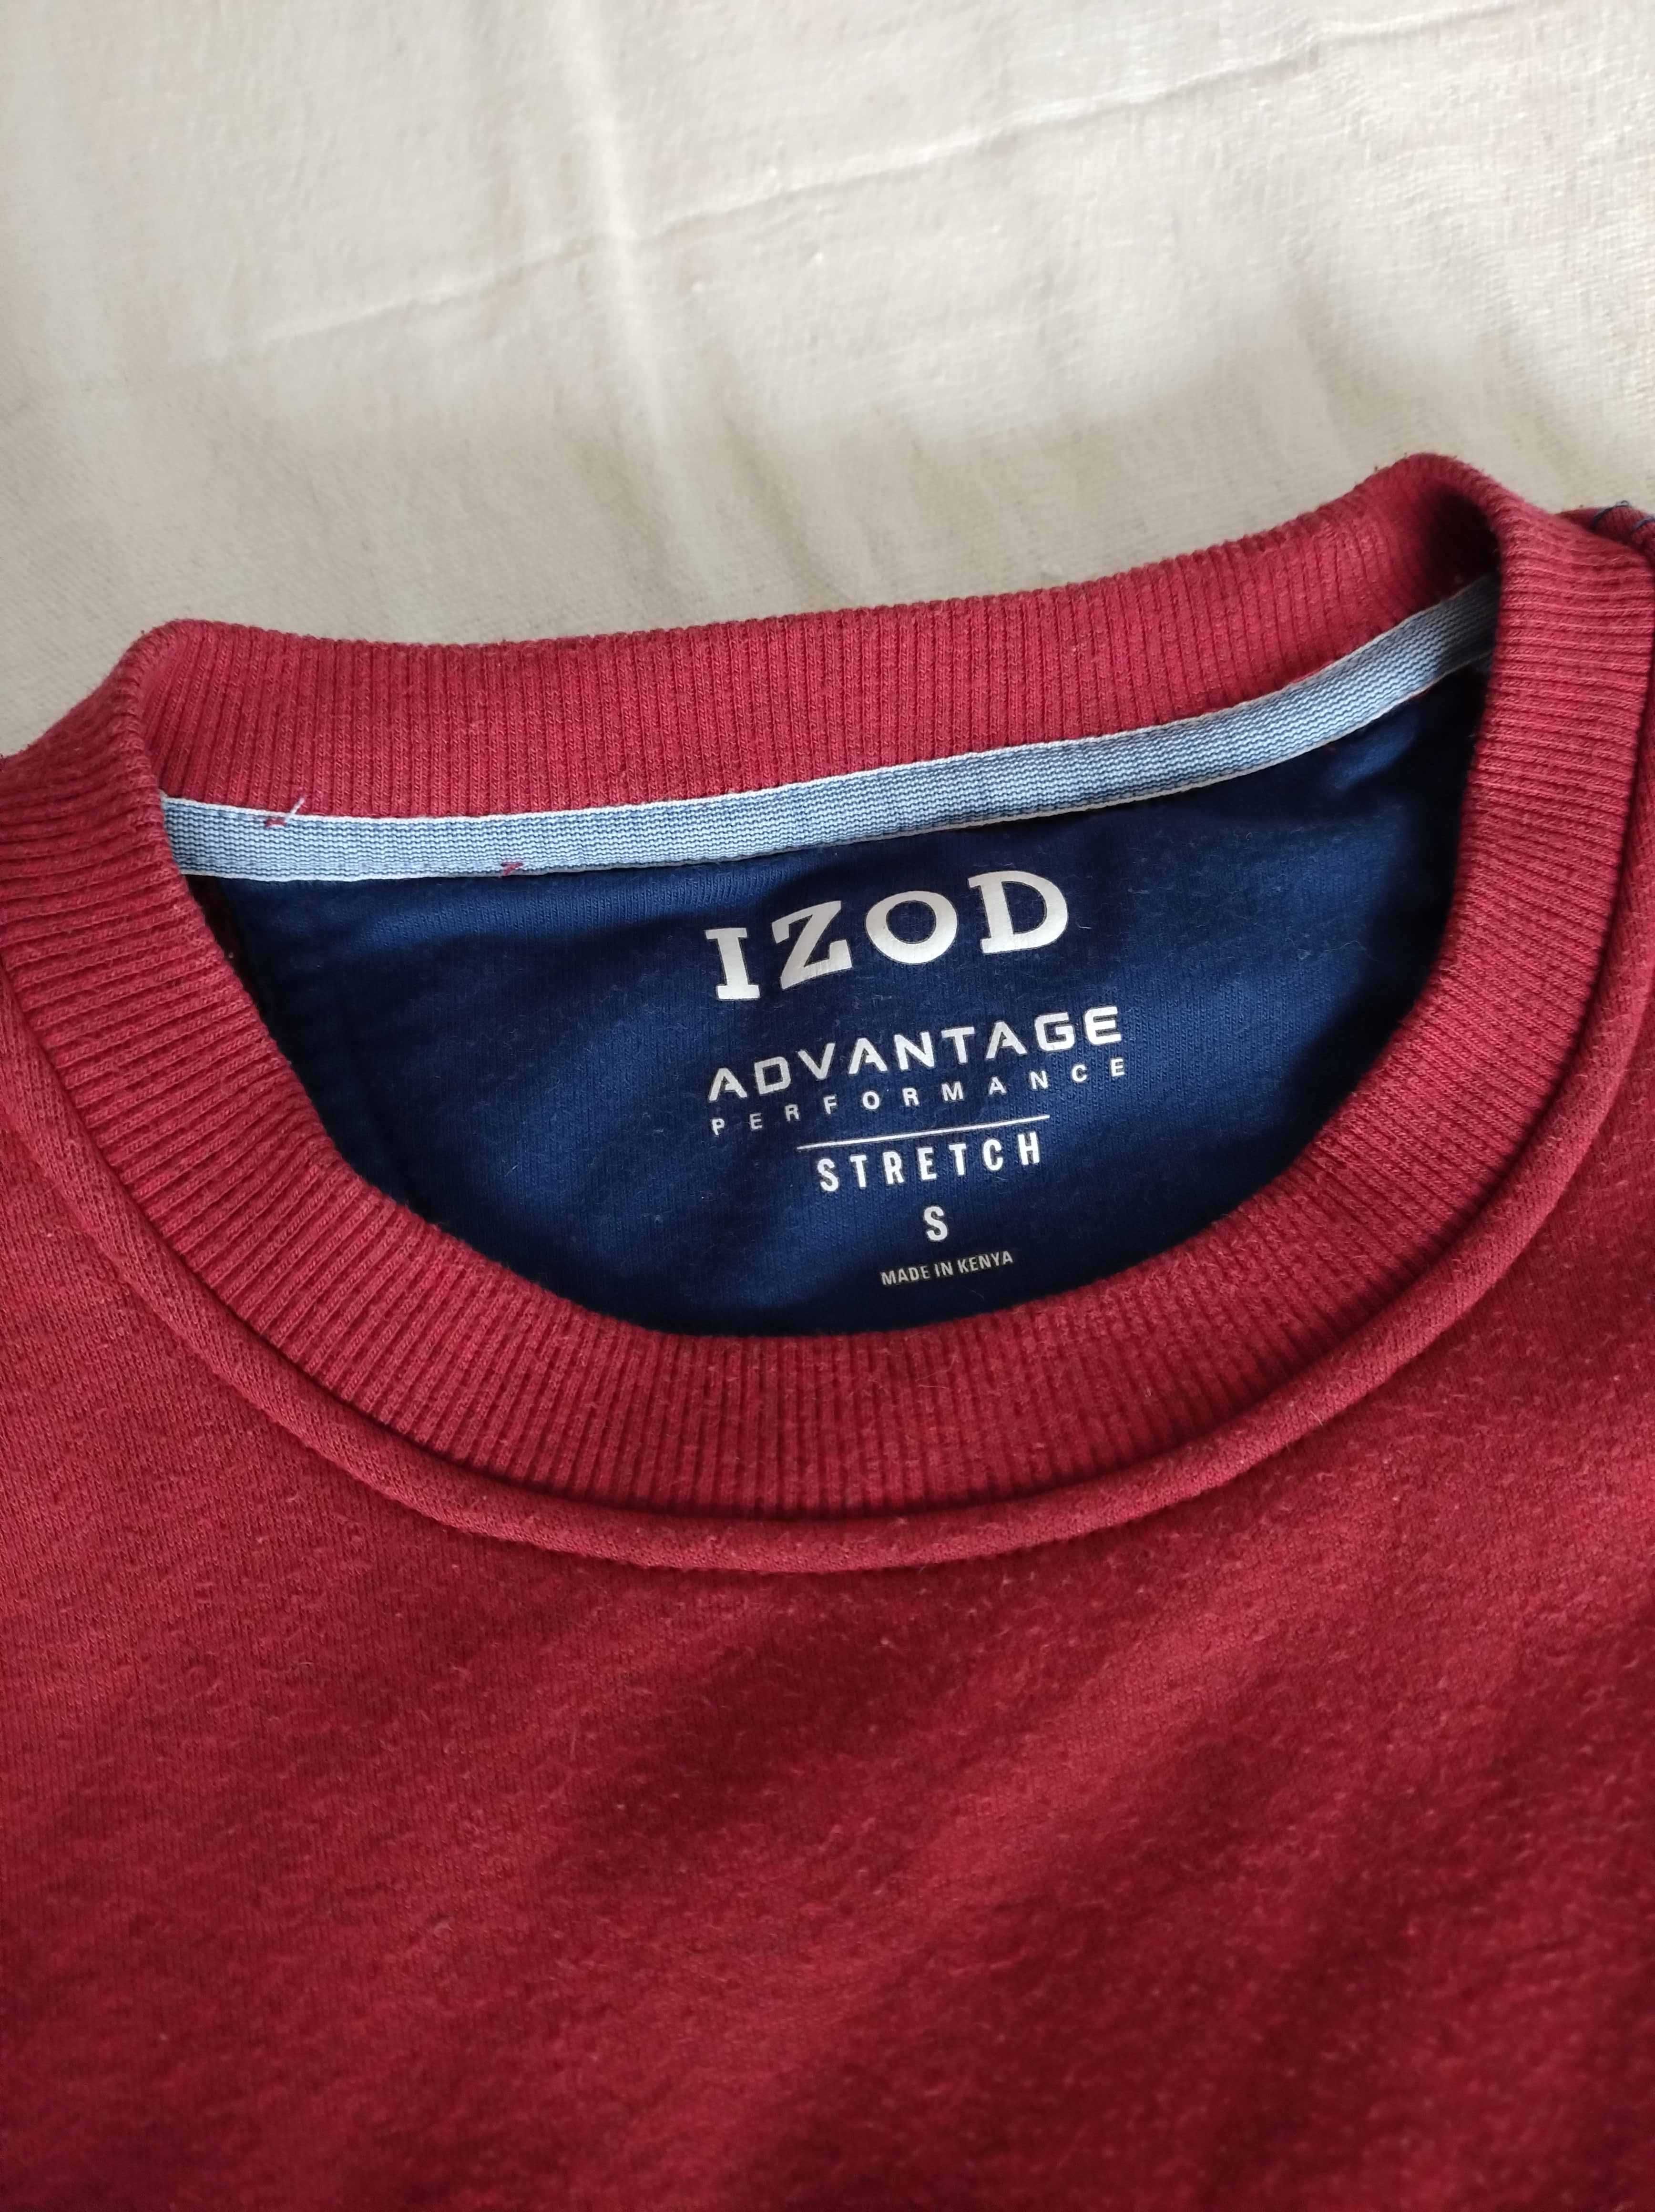 bordowa bluza izod advantage w rozmiarze S